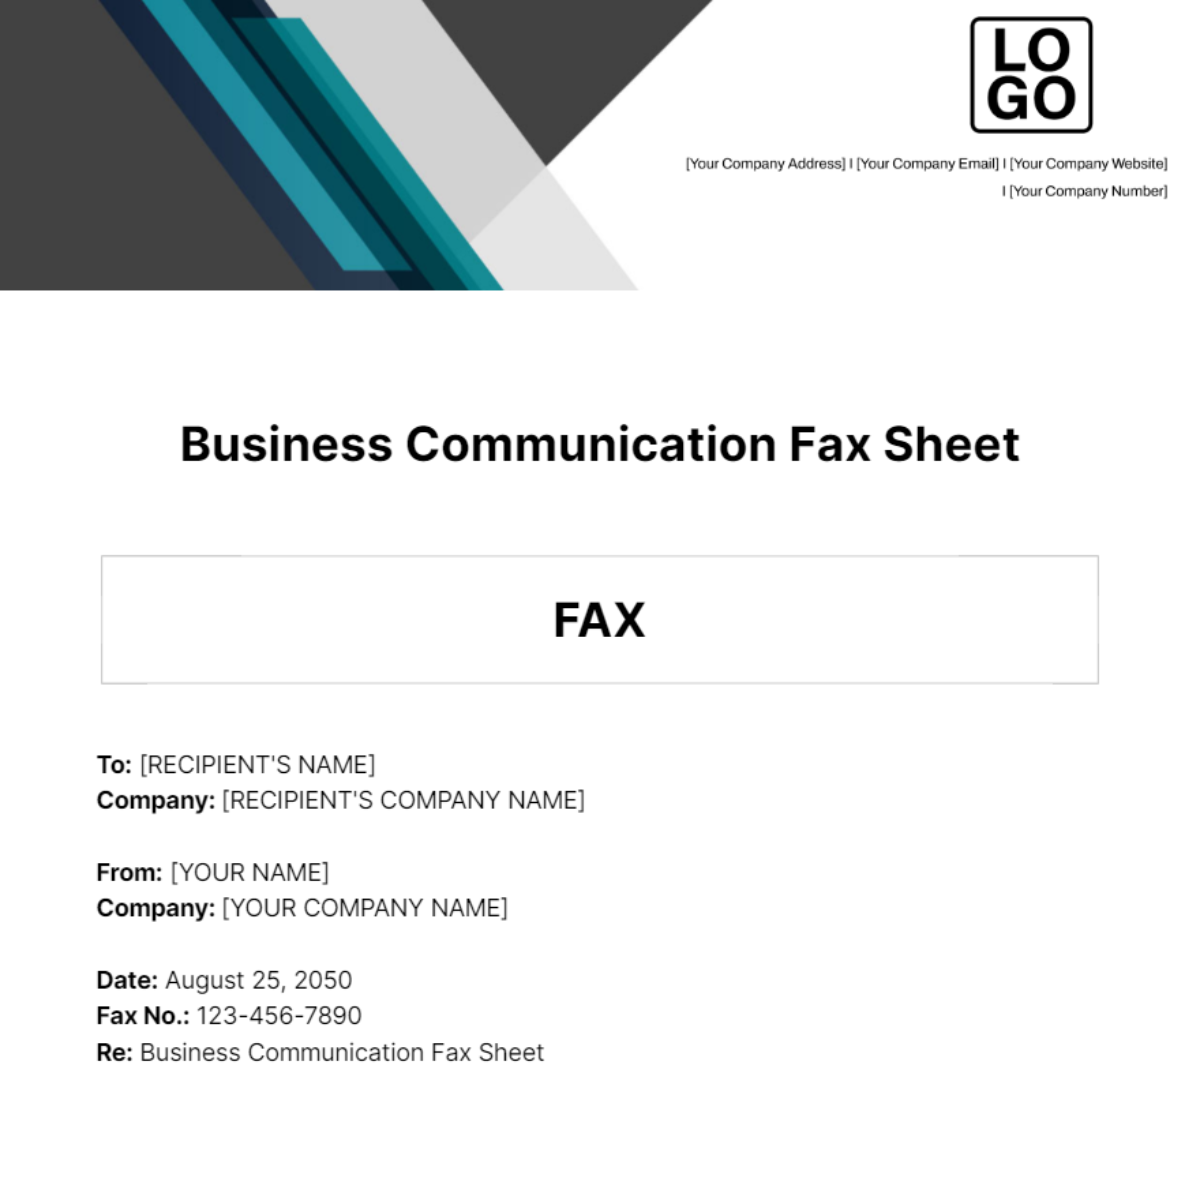 Business Communication Fax Sheet Template